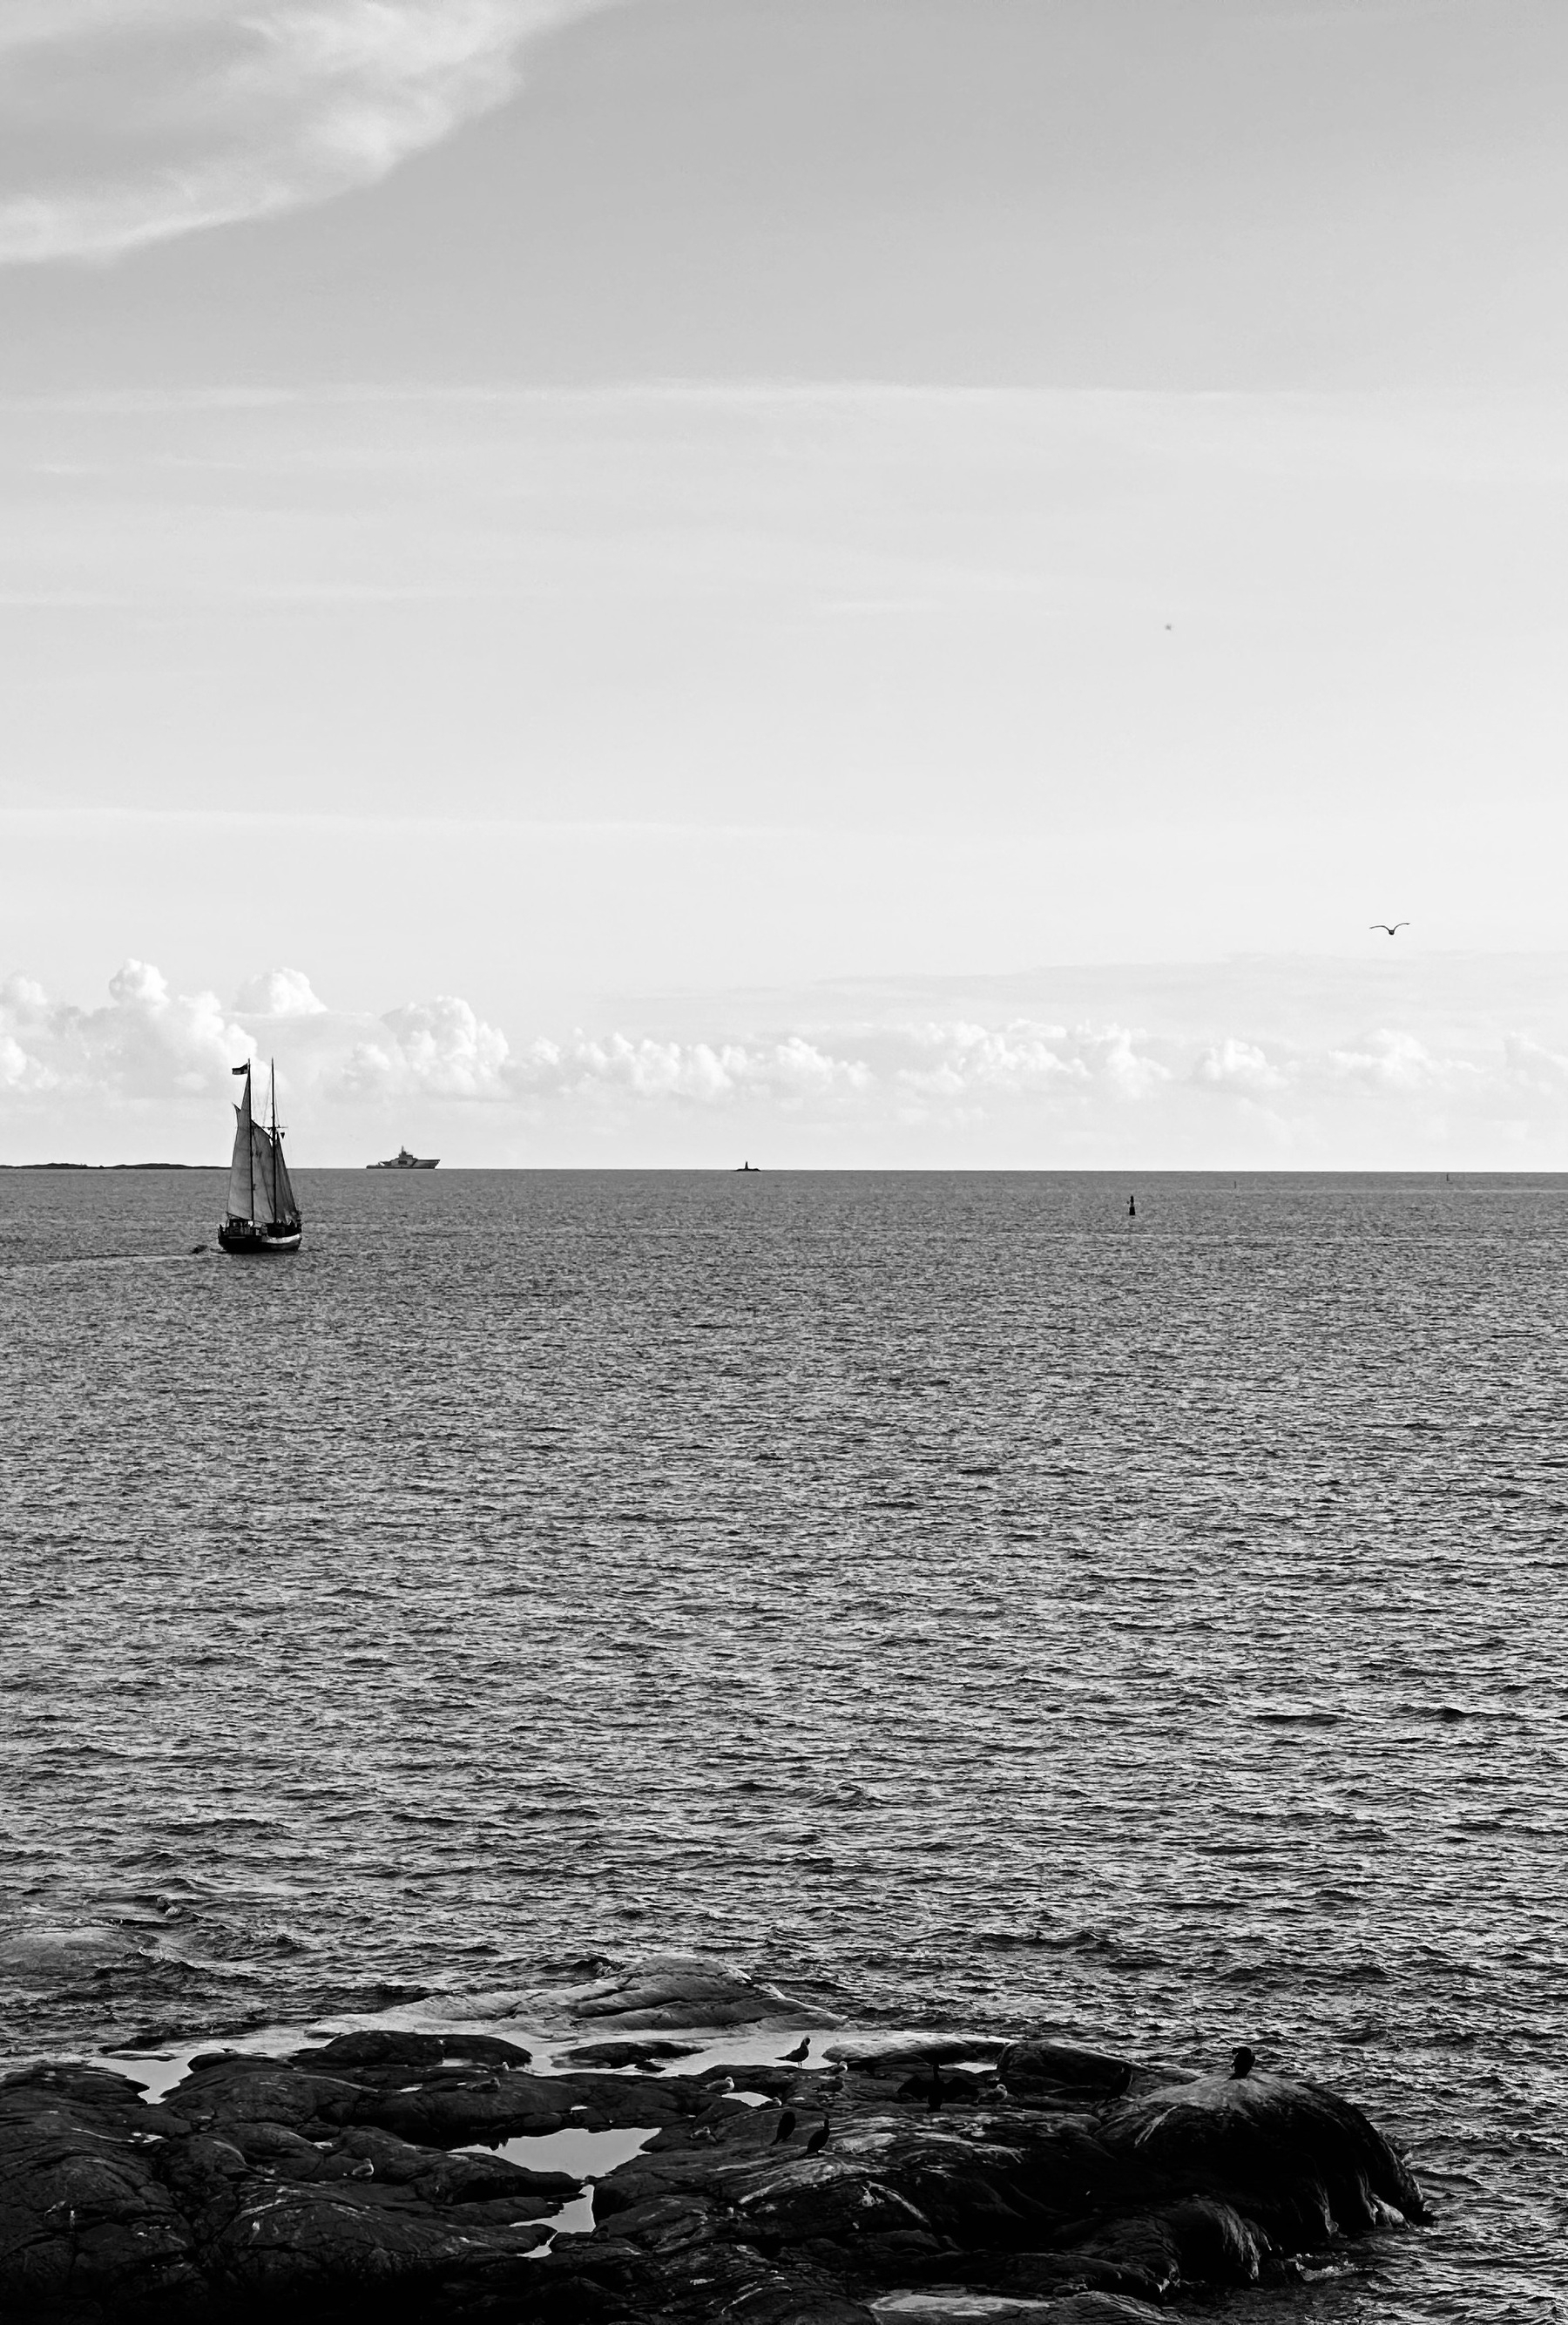 A small sailing ship on a calm sea.